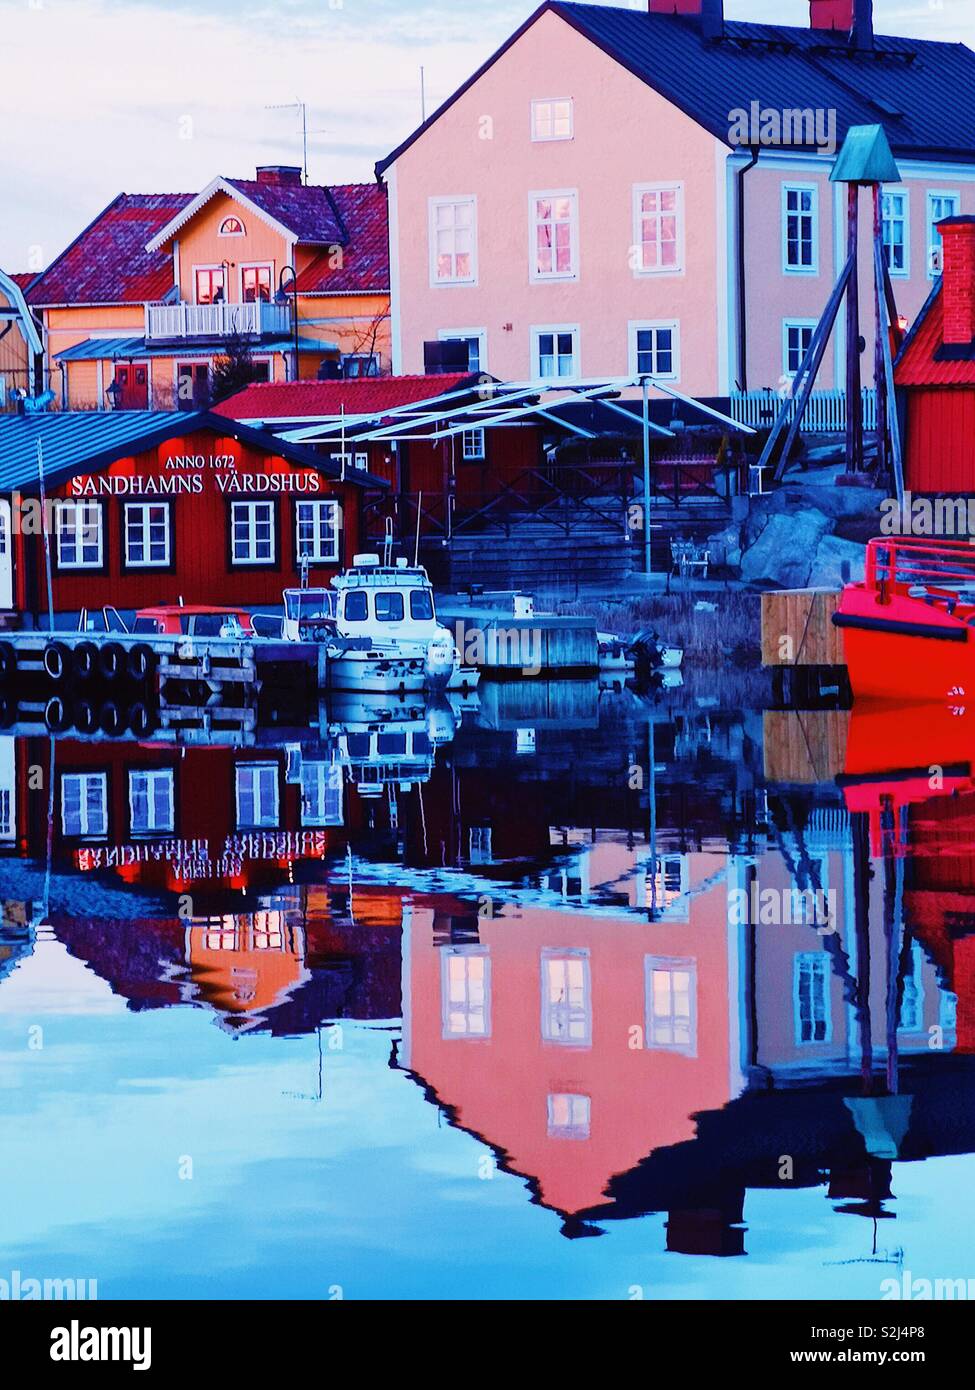 Crépuscule réflexions Sandhamn Harbour, l'archipel de Stockholm, Suède, Scandinavie. Île de l'archipel extérieur populaire pour la voile et le yachting depuis le 19e siècle Banque D'Images